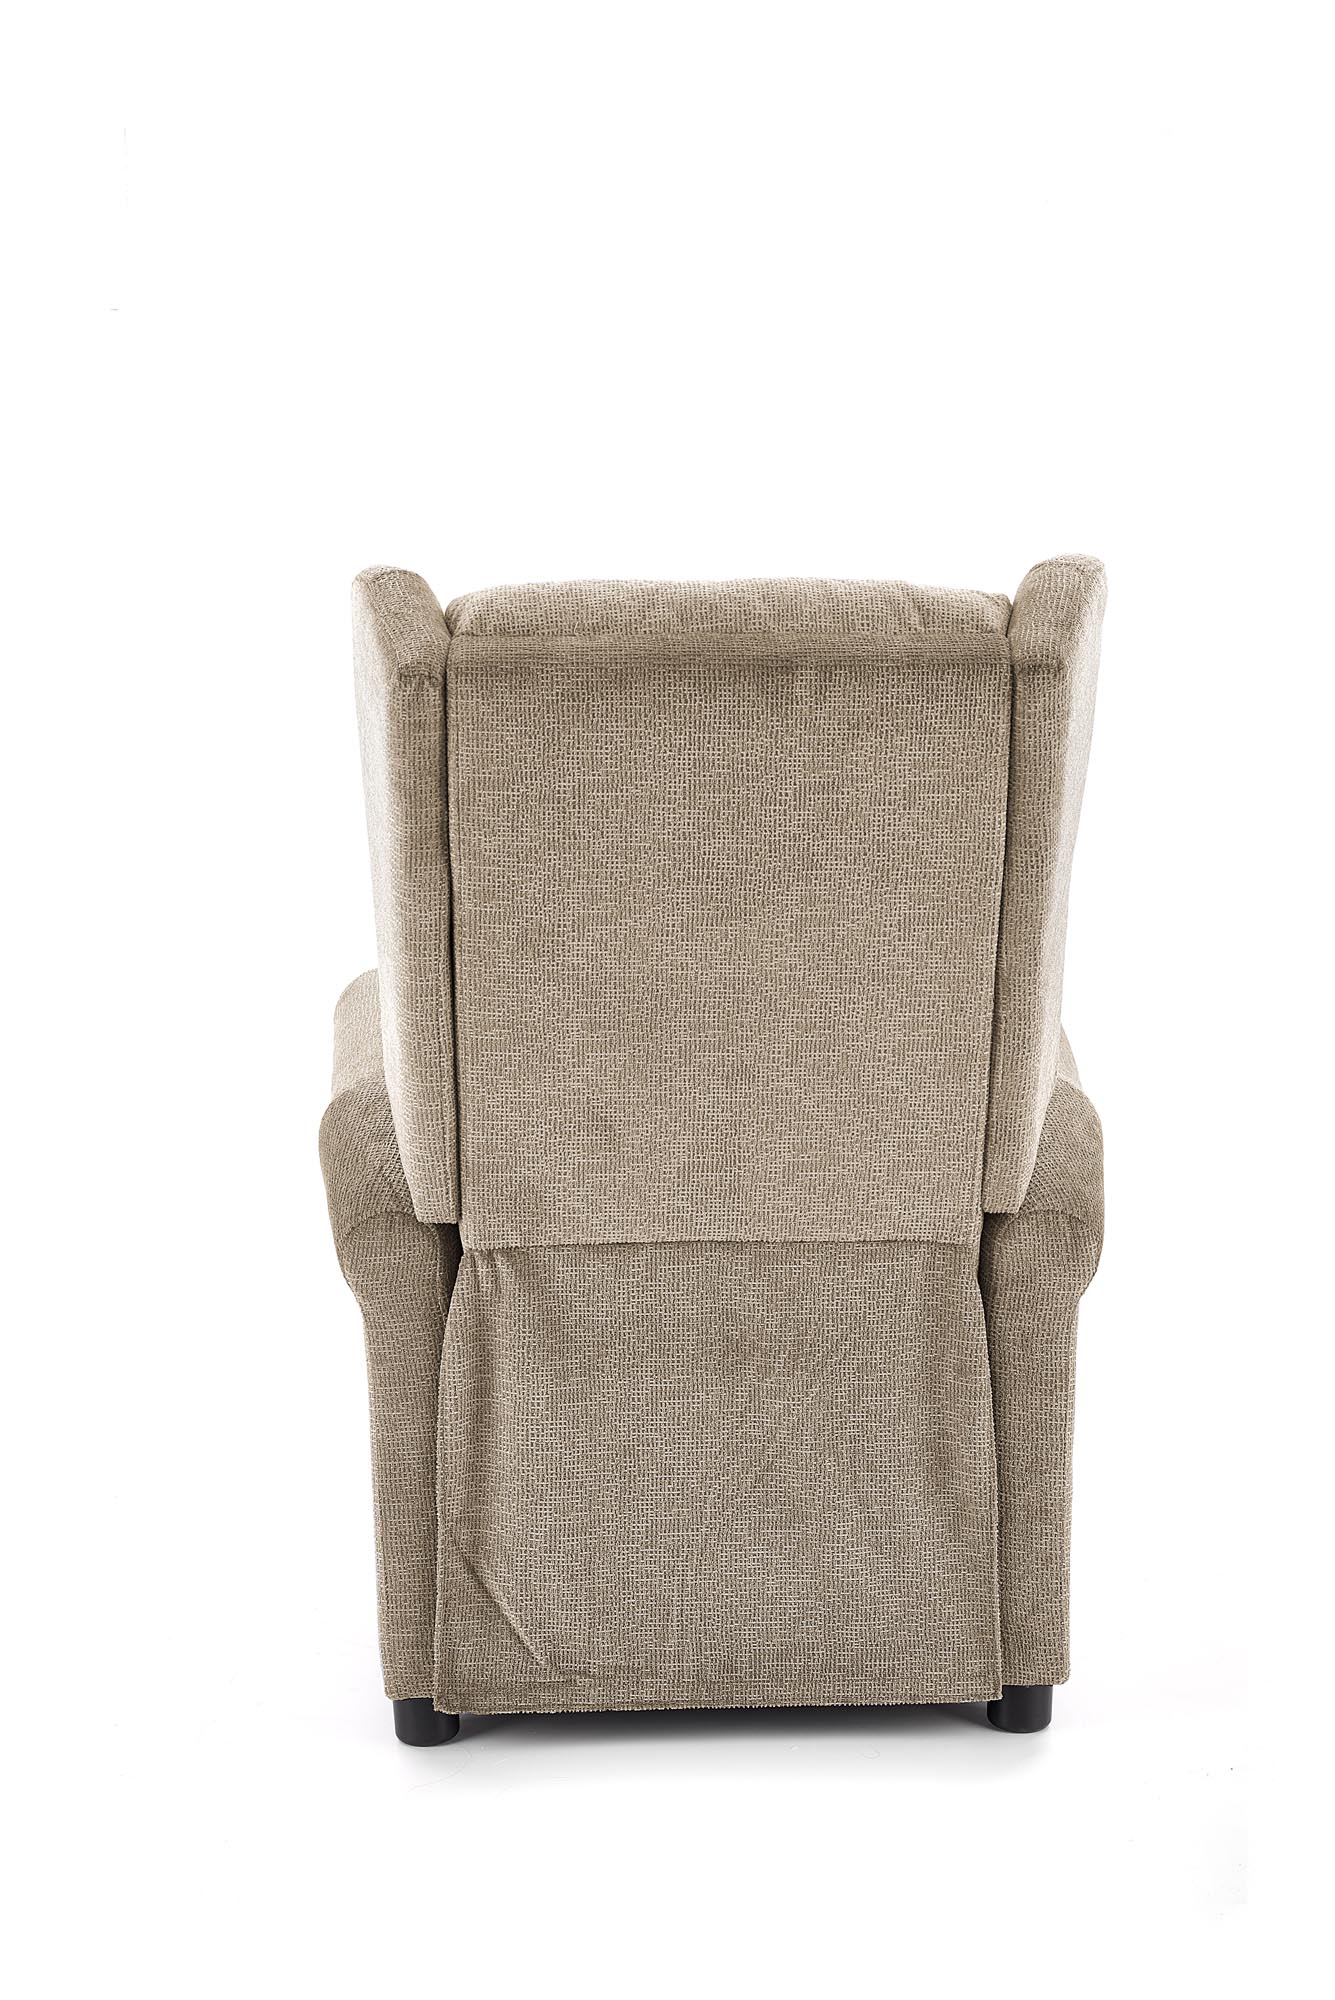 AGUSTIN M fotel rozkładany z funkcją masażu beżowy  agustin m fotel rozkładany z funkcją masażu beżowy 